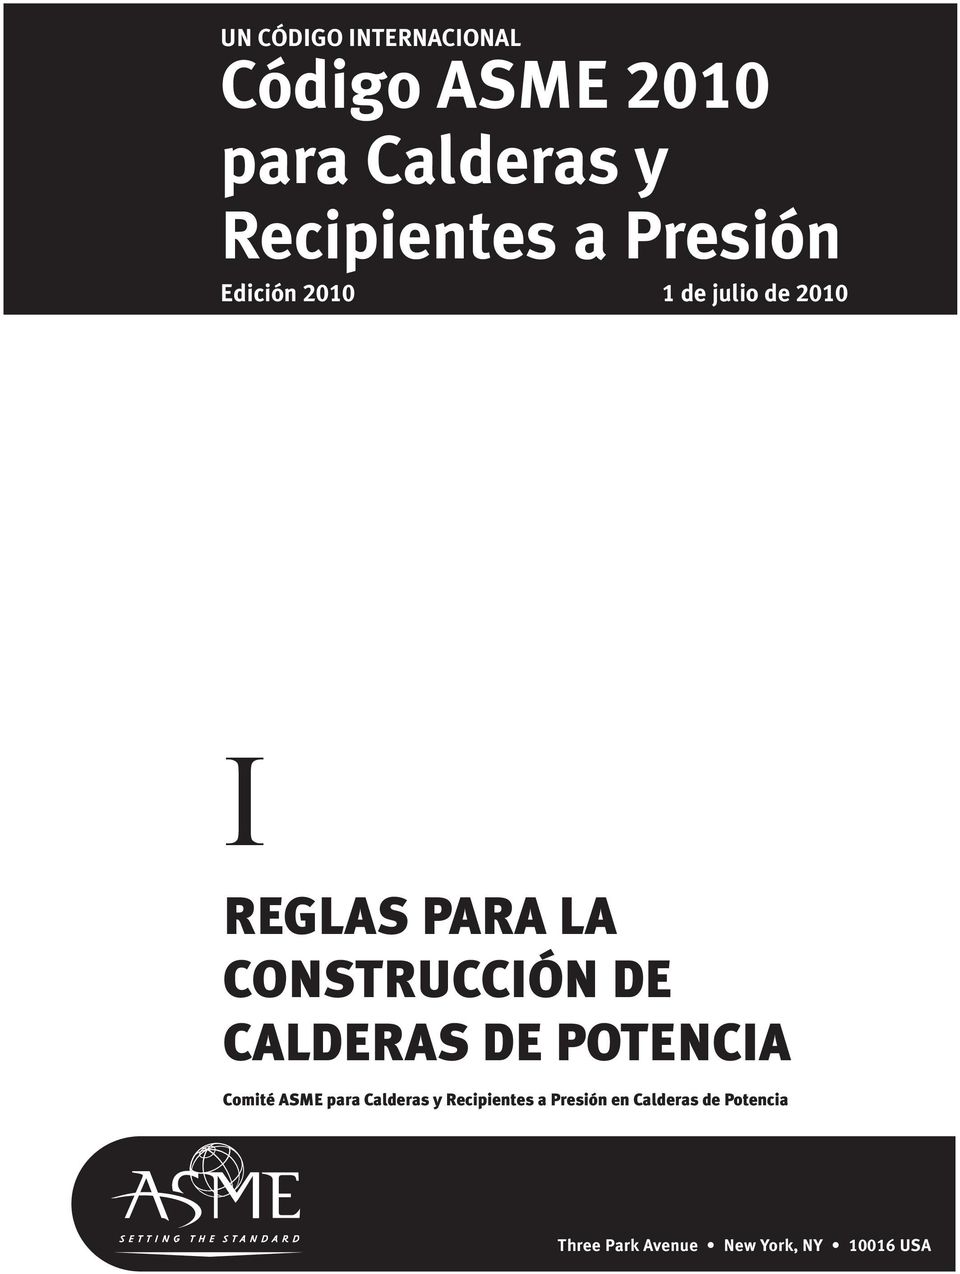 CONSTRUCCIÓN DE CALDERAS DE POTENCIA Comité ASME para Calderas y